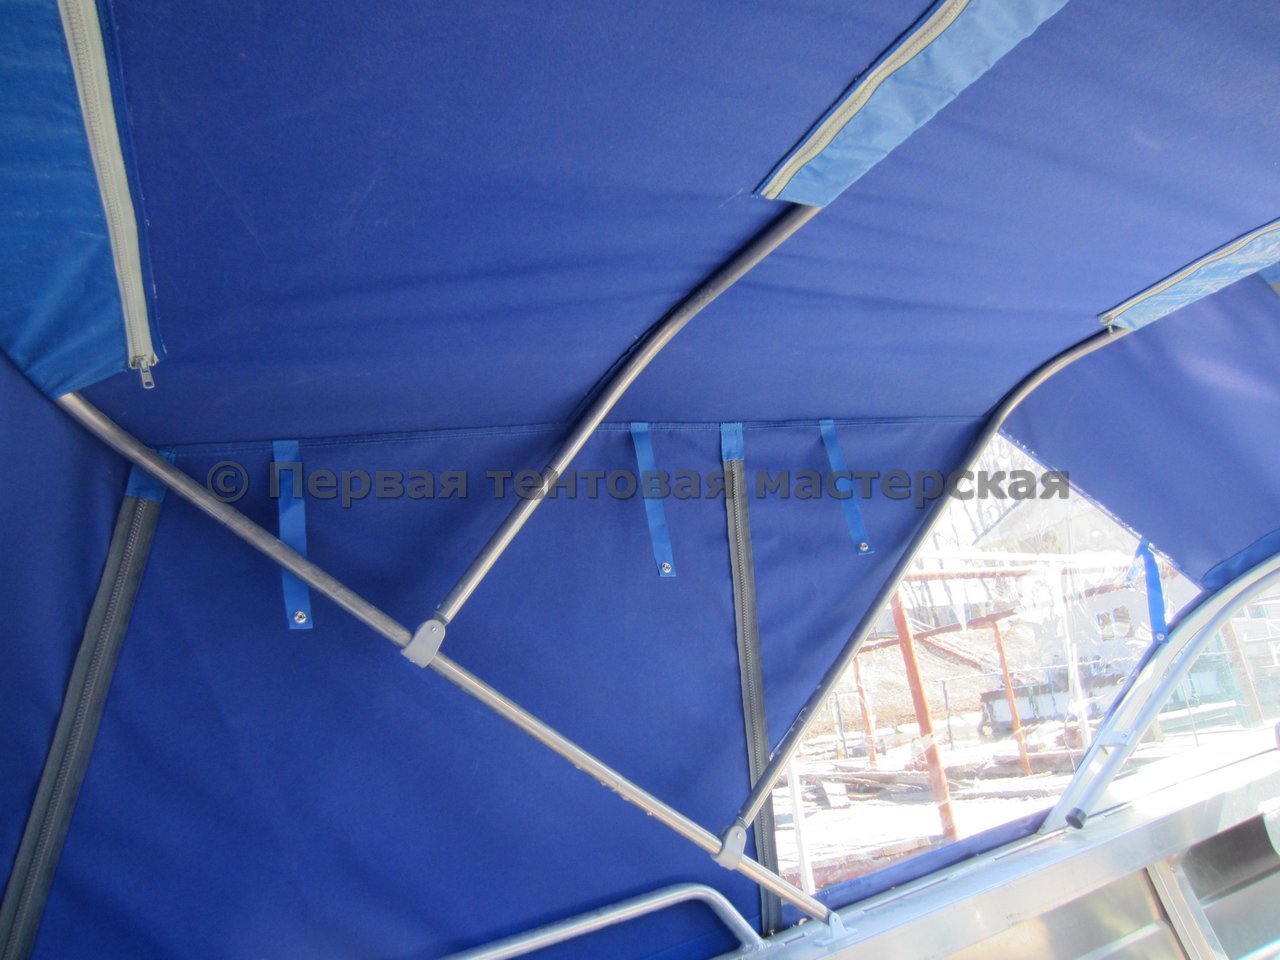 tents1404_022